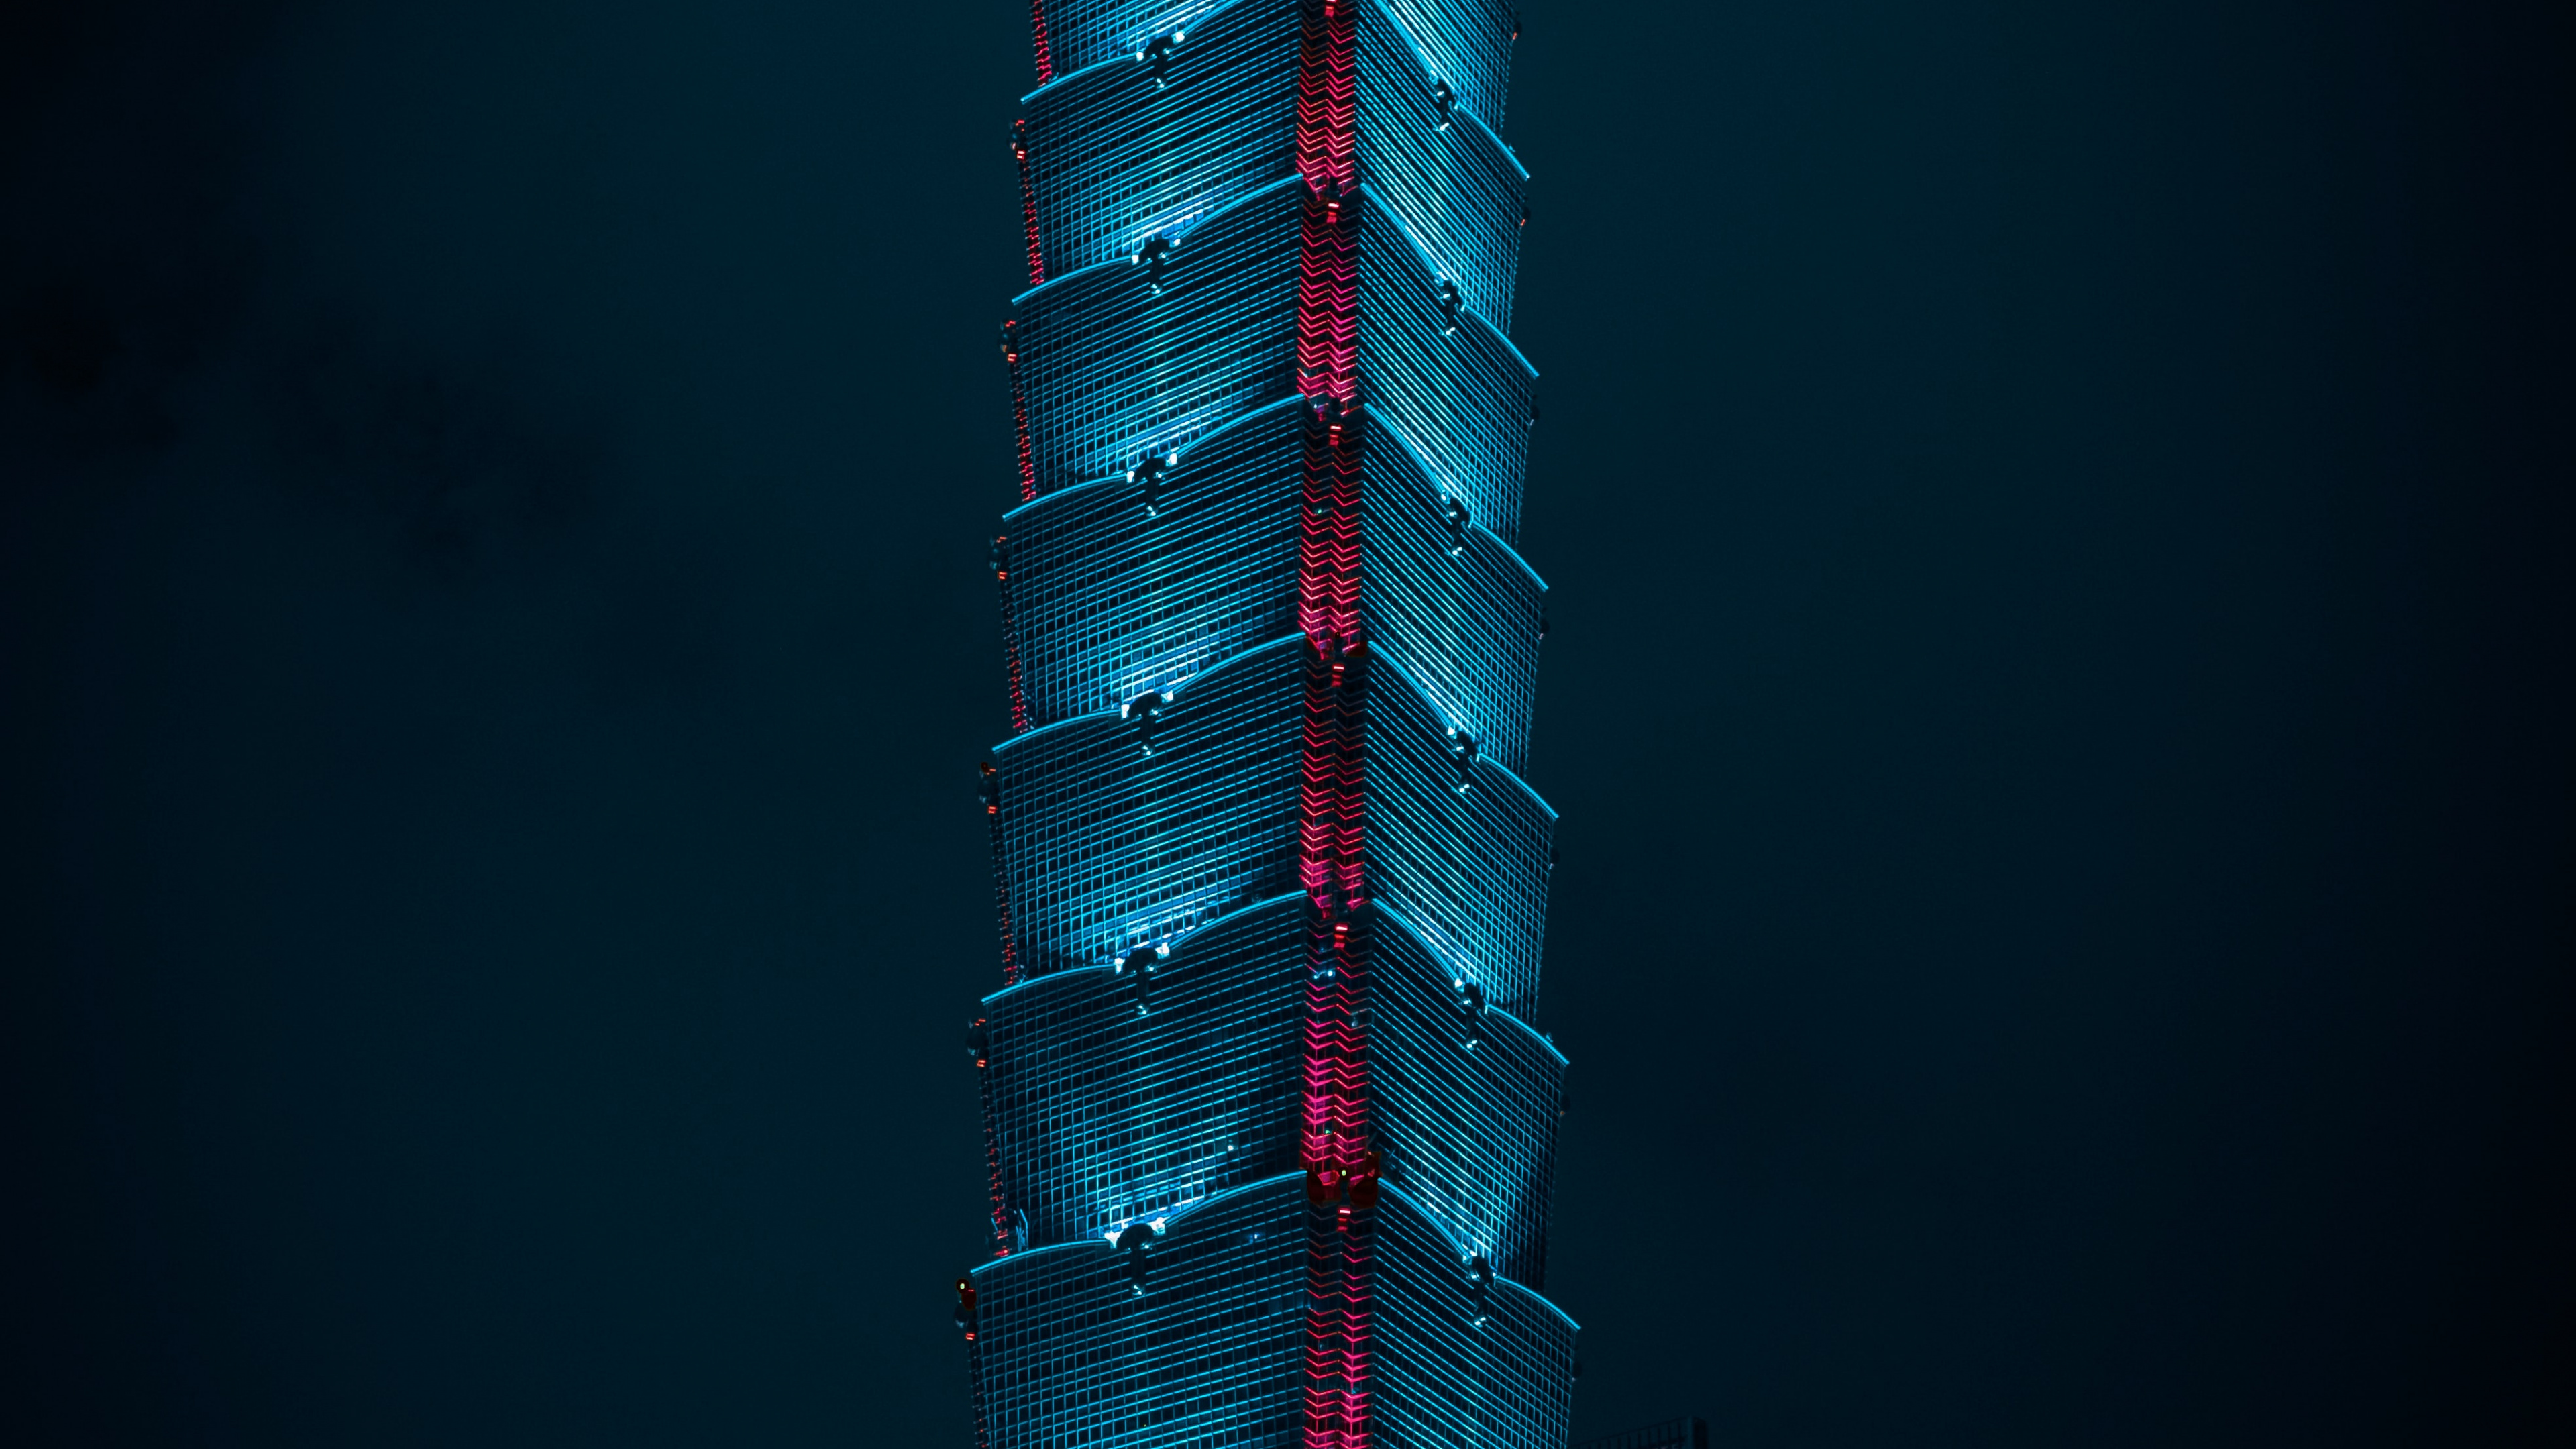 Observatorium Taipei 101, Wolkenkratzer, Gebäude, Tower, Taipei 101. Wallpaper in 3840x2160 Resolution